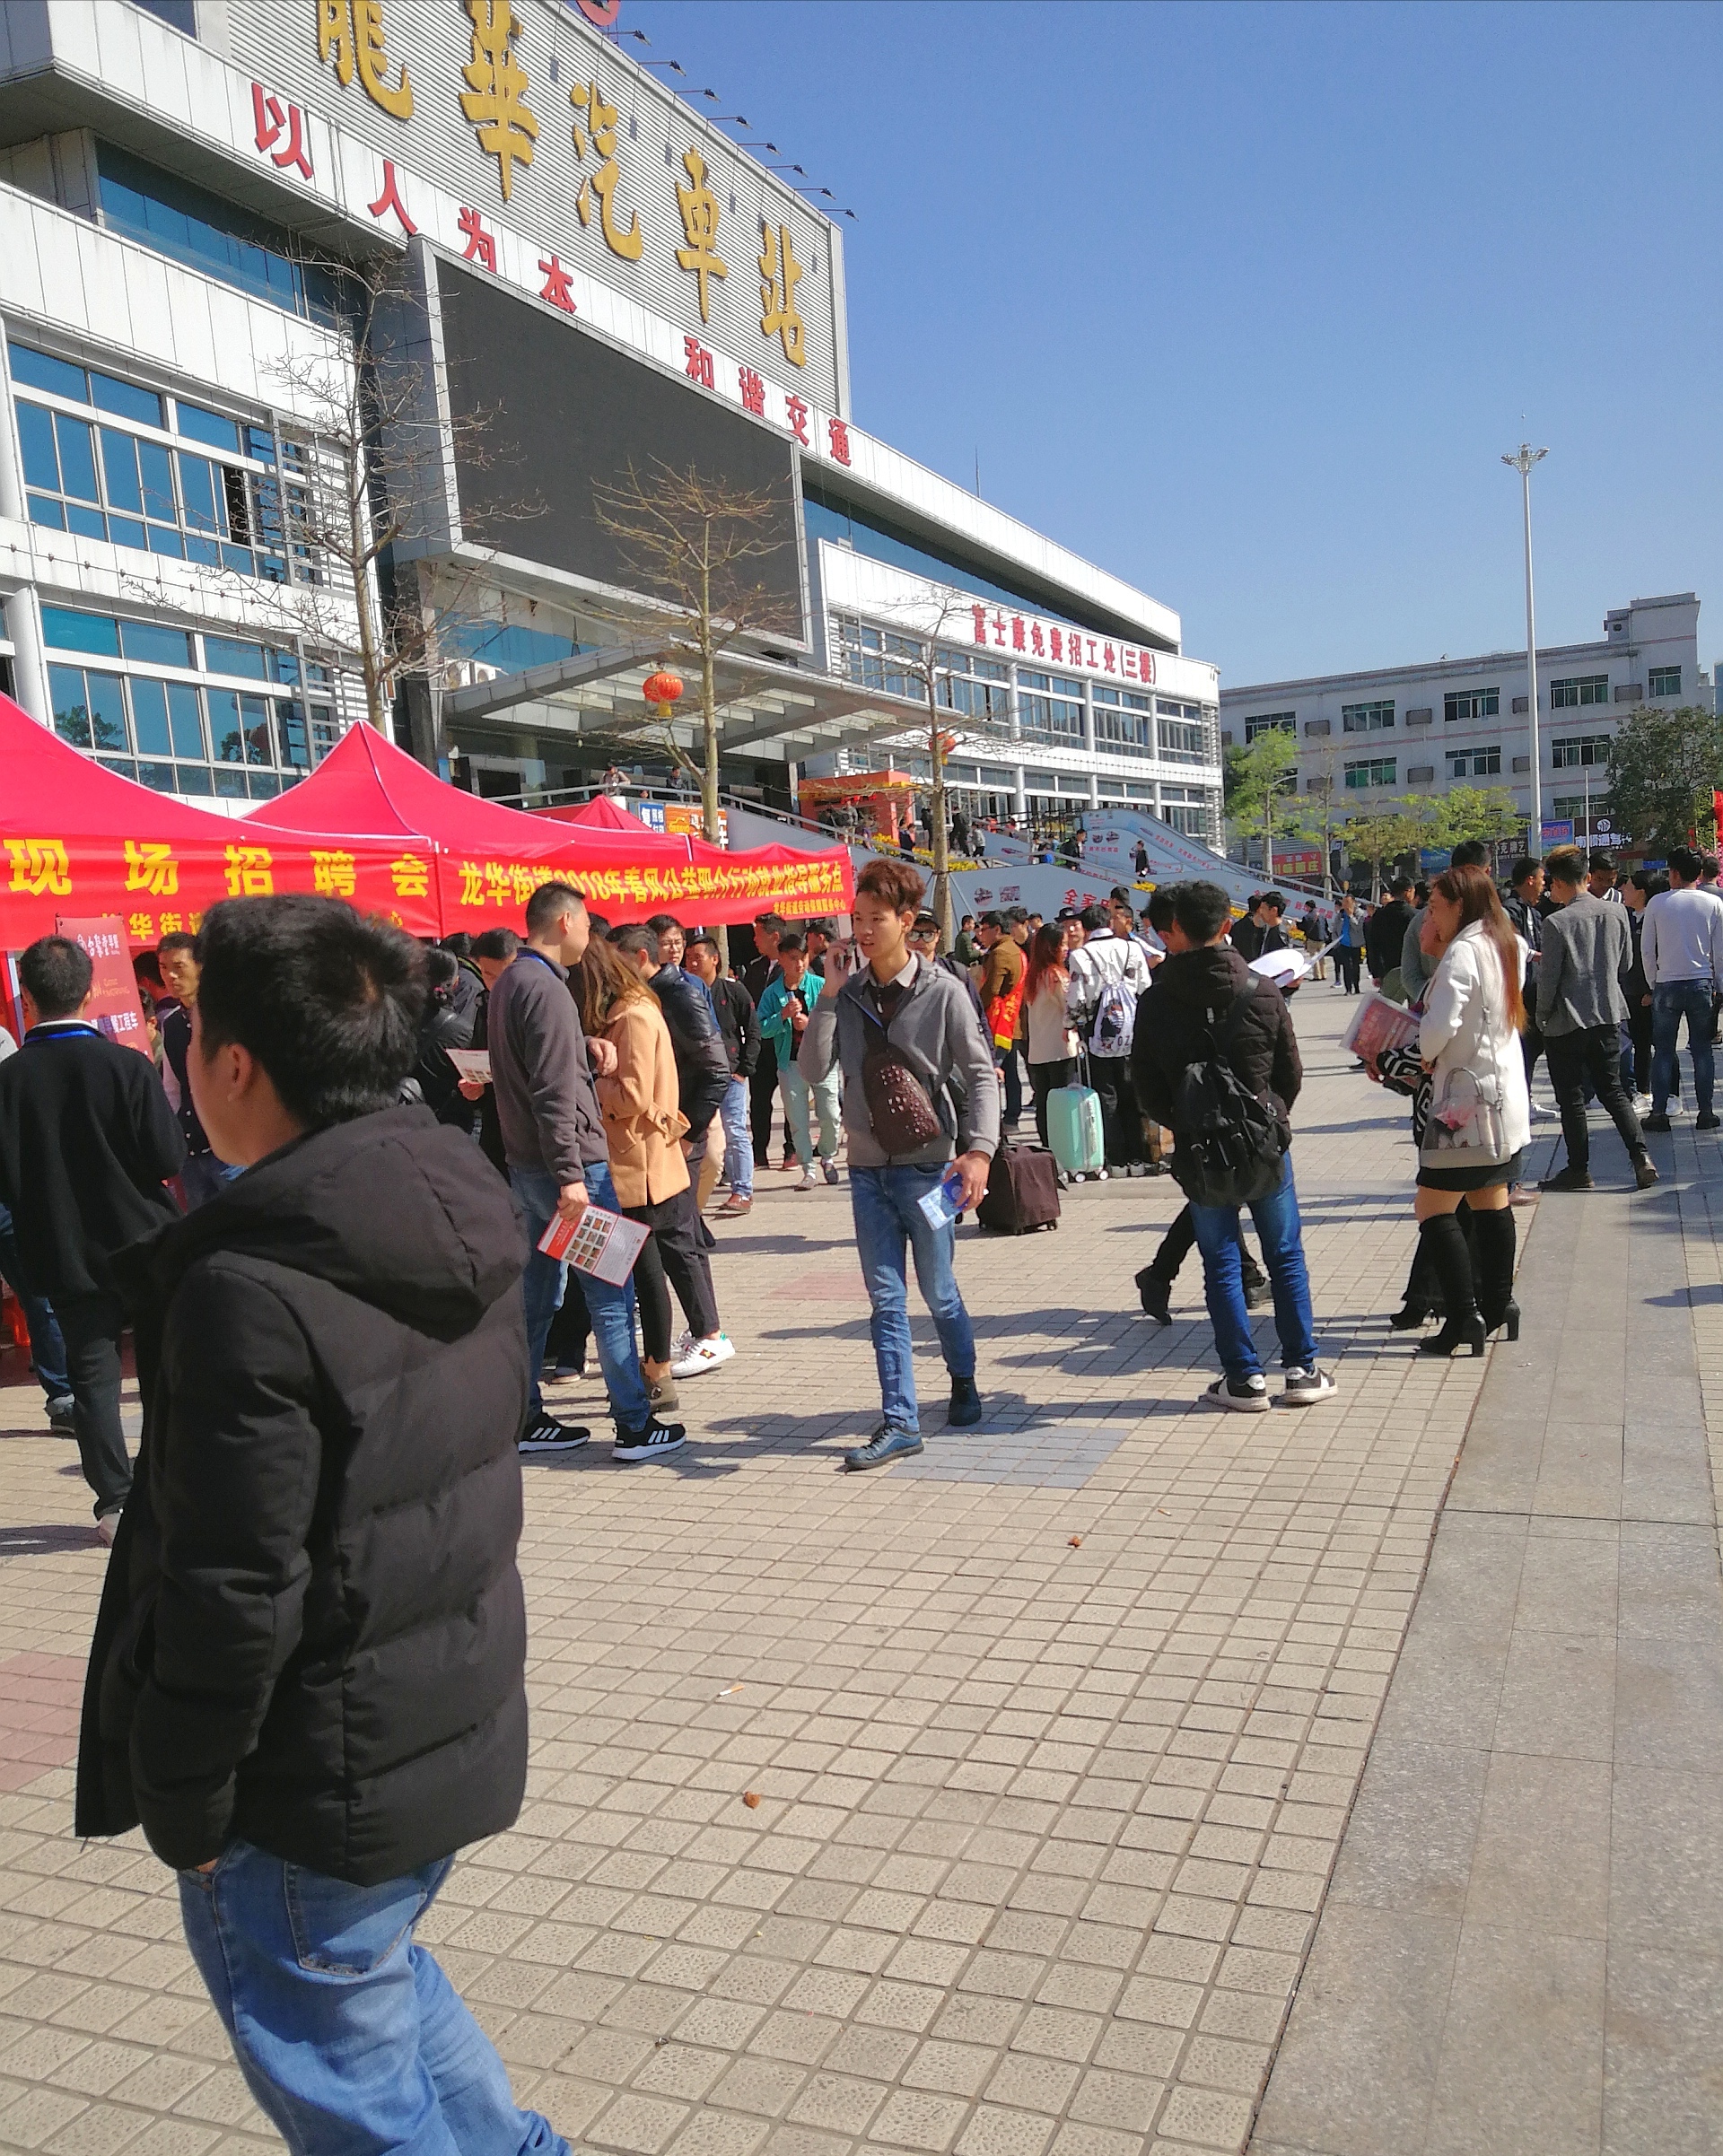 这两天,深圳的这座汽车站成了招聘场,大批招工人员在这里聚集